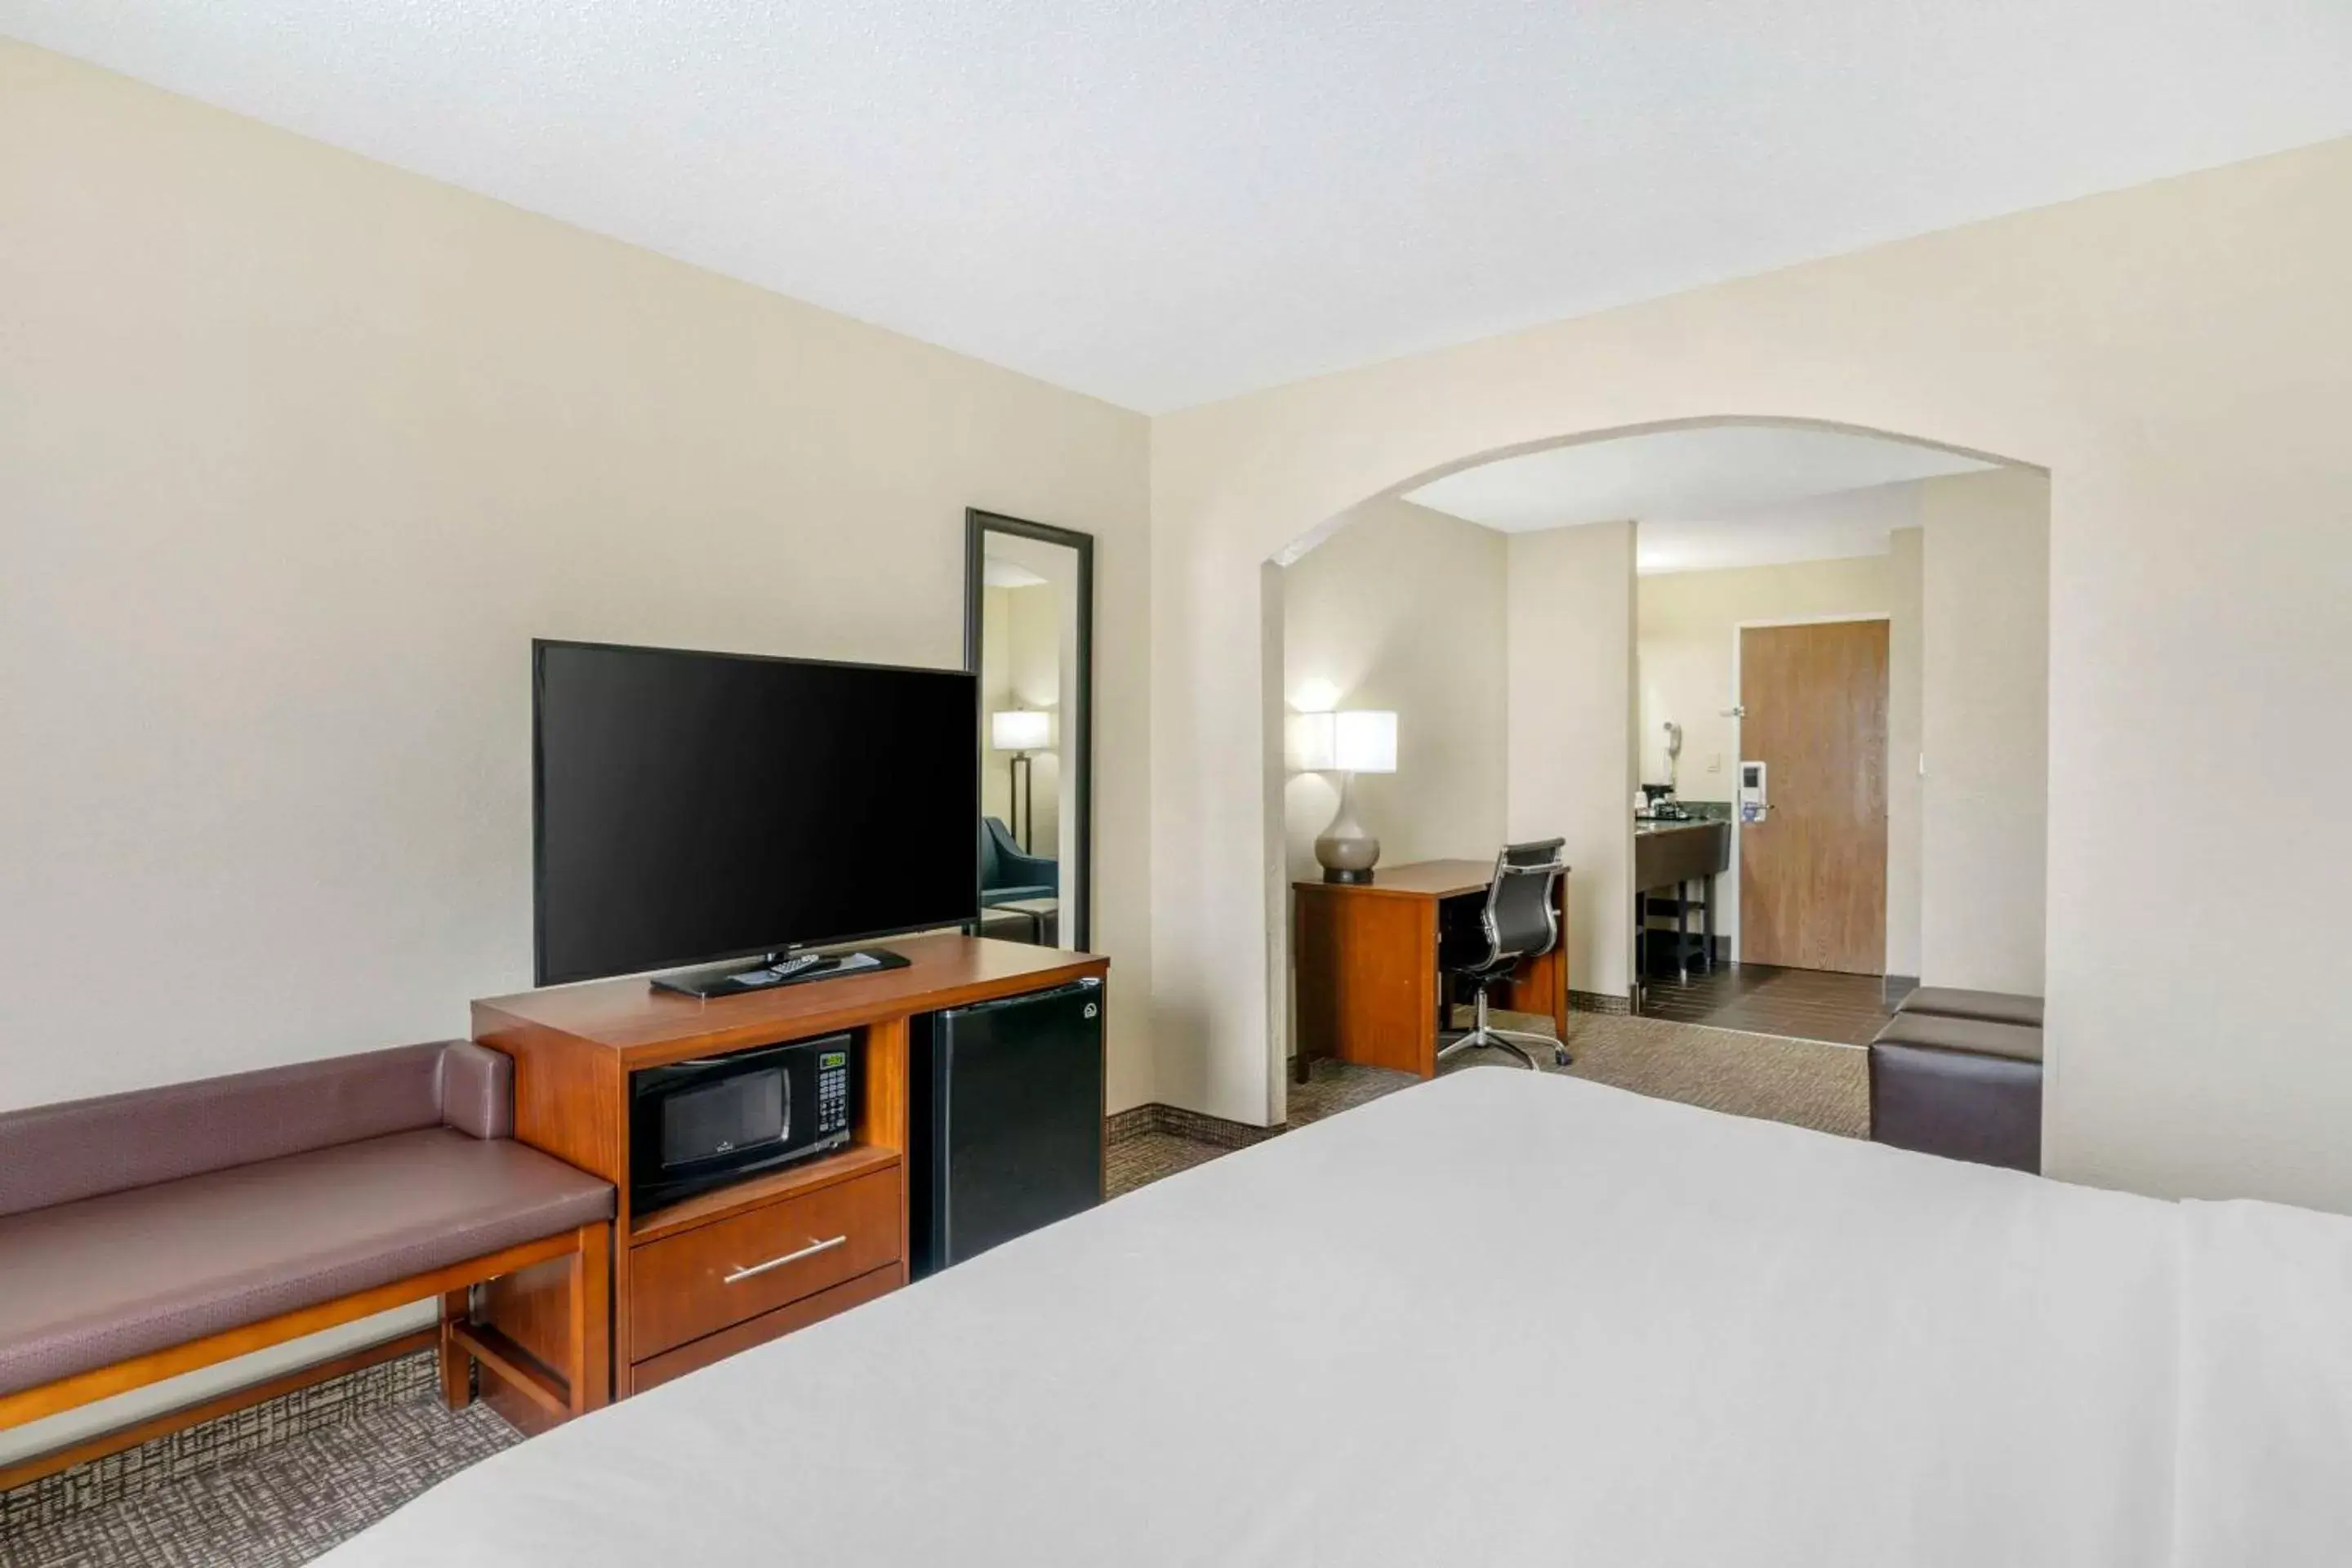 Bedroom, TV/Entertainment Center in Comfort Inn & Suites La Grange